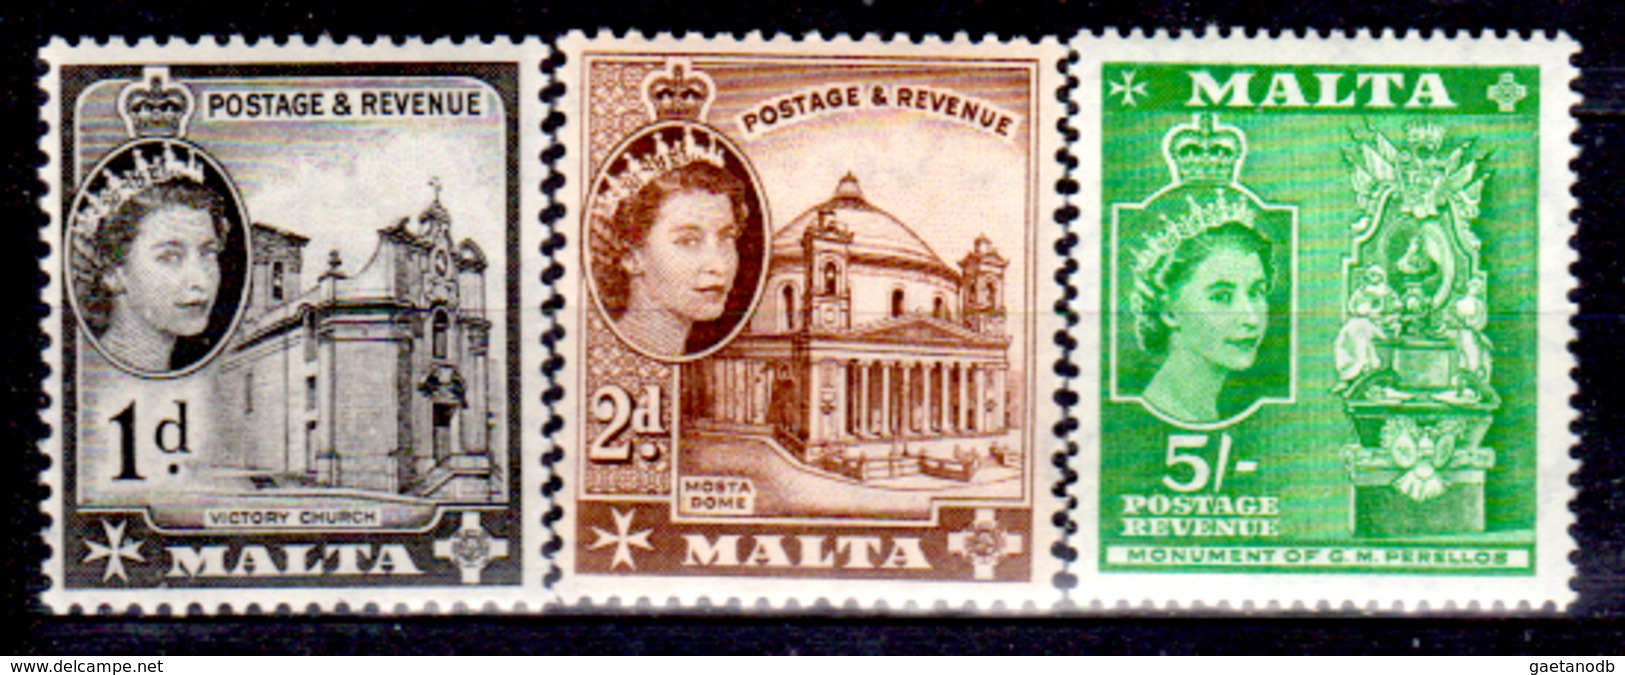 Malta-168 - Emissione 1956-57 (++) MNH - Valutato Solo Il 5 Sh.- Senza Difetti Occulti.) - Malta